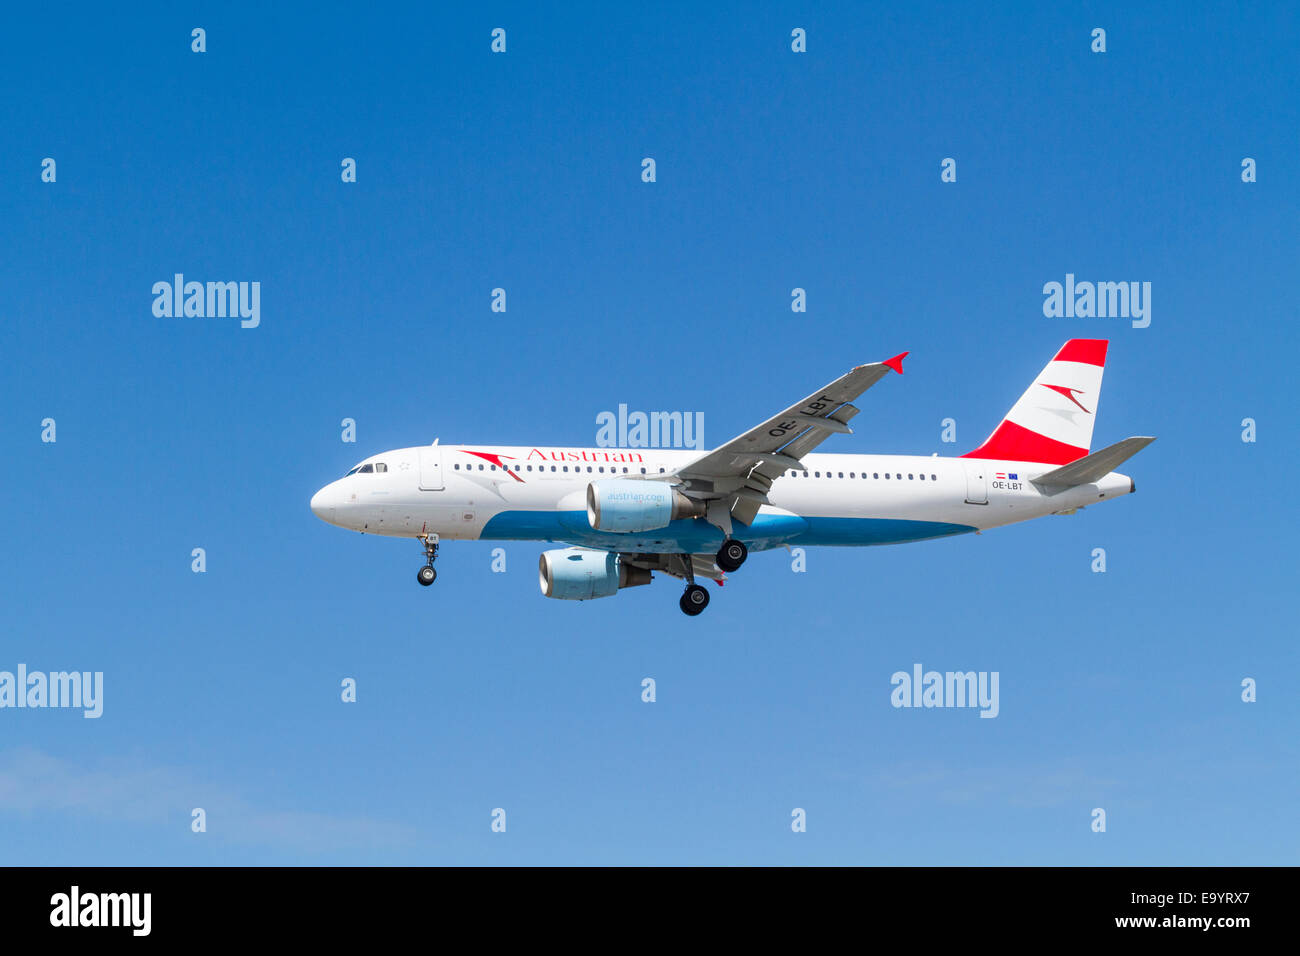 Austrian Airlines Airbus A320 avion, OE-LBT sur son approche pour l'atterrissage à l'aéroport de Londres Heathrow, Angleterre, RU Banque D'Images